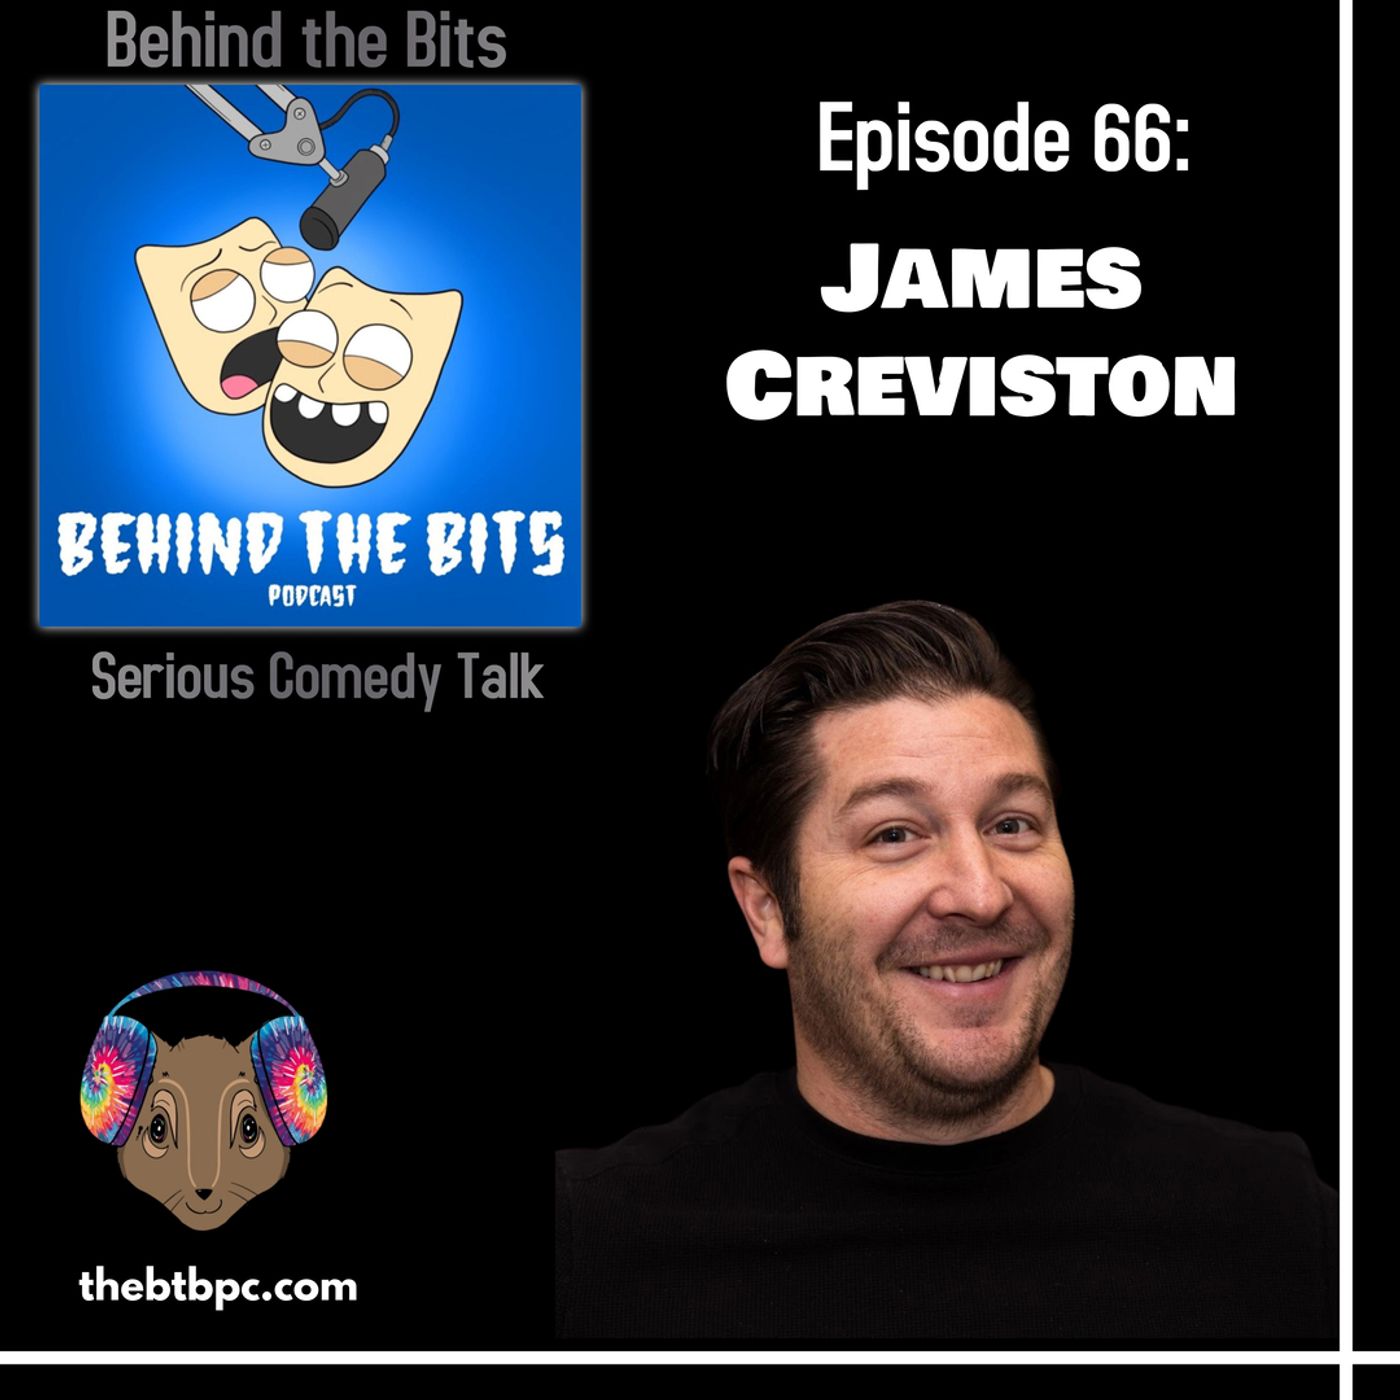 Episode 66: James Creviston